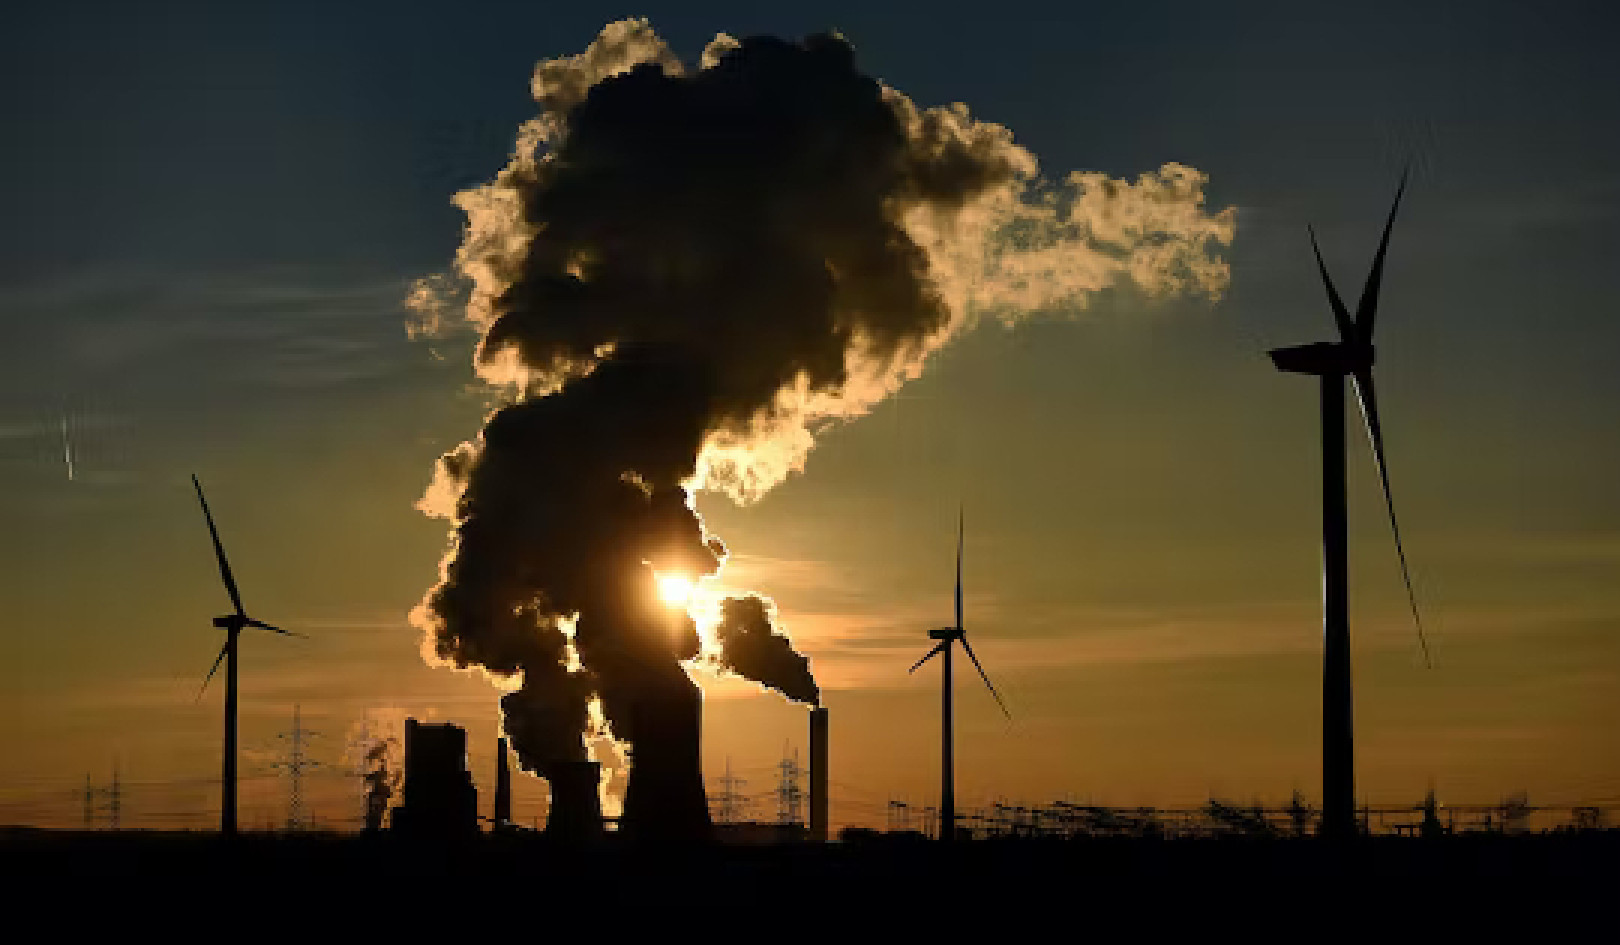 Hur energiledare föreställer sig att motverka klimatförändringar i framtiden